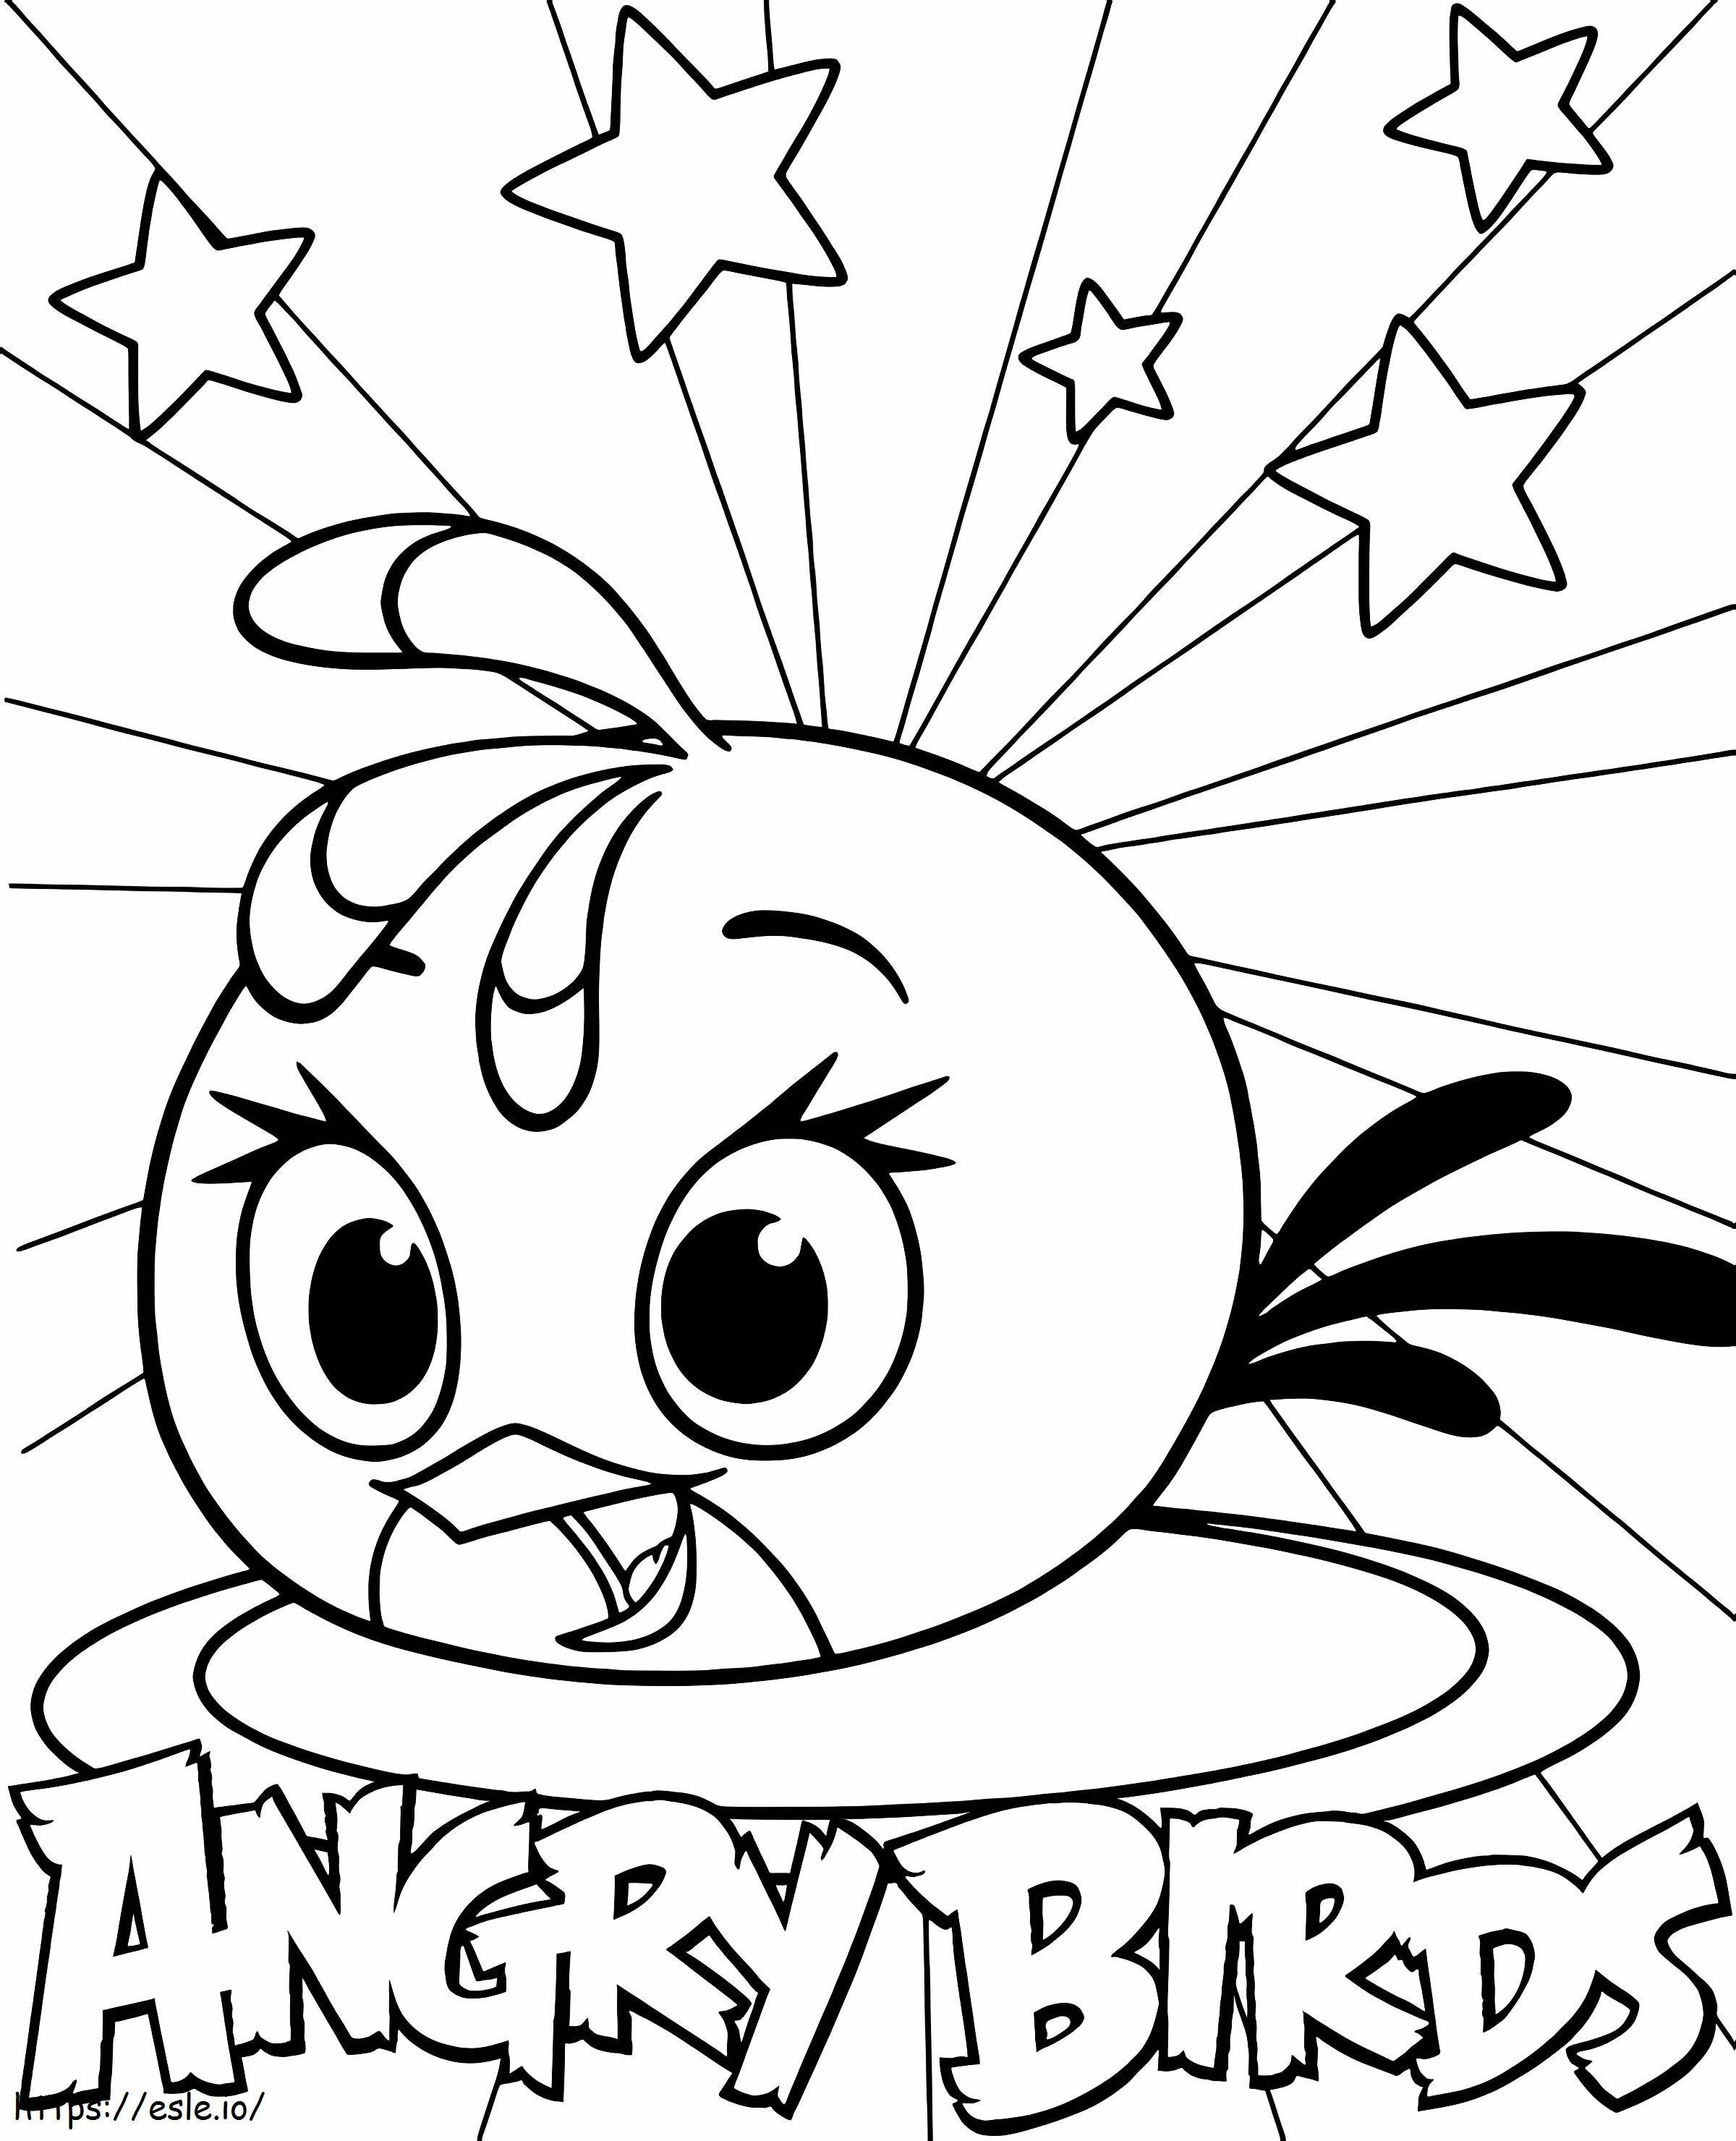 Angry Birds Stella-logo kleurplaat kleurplaat